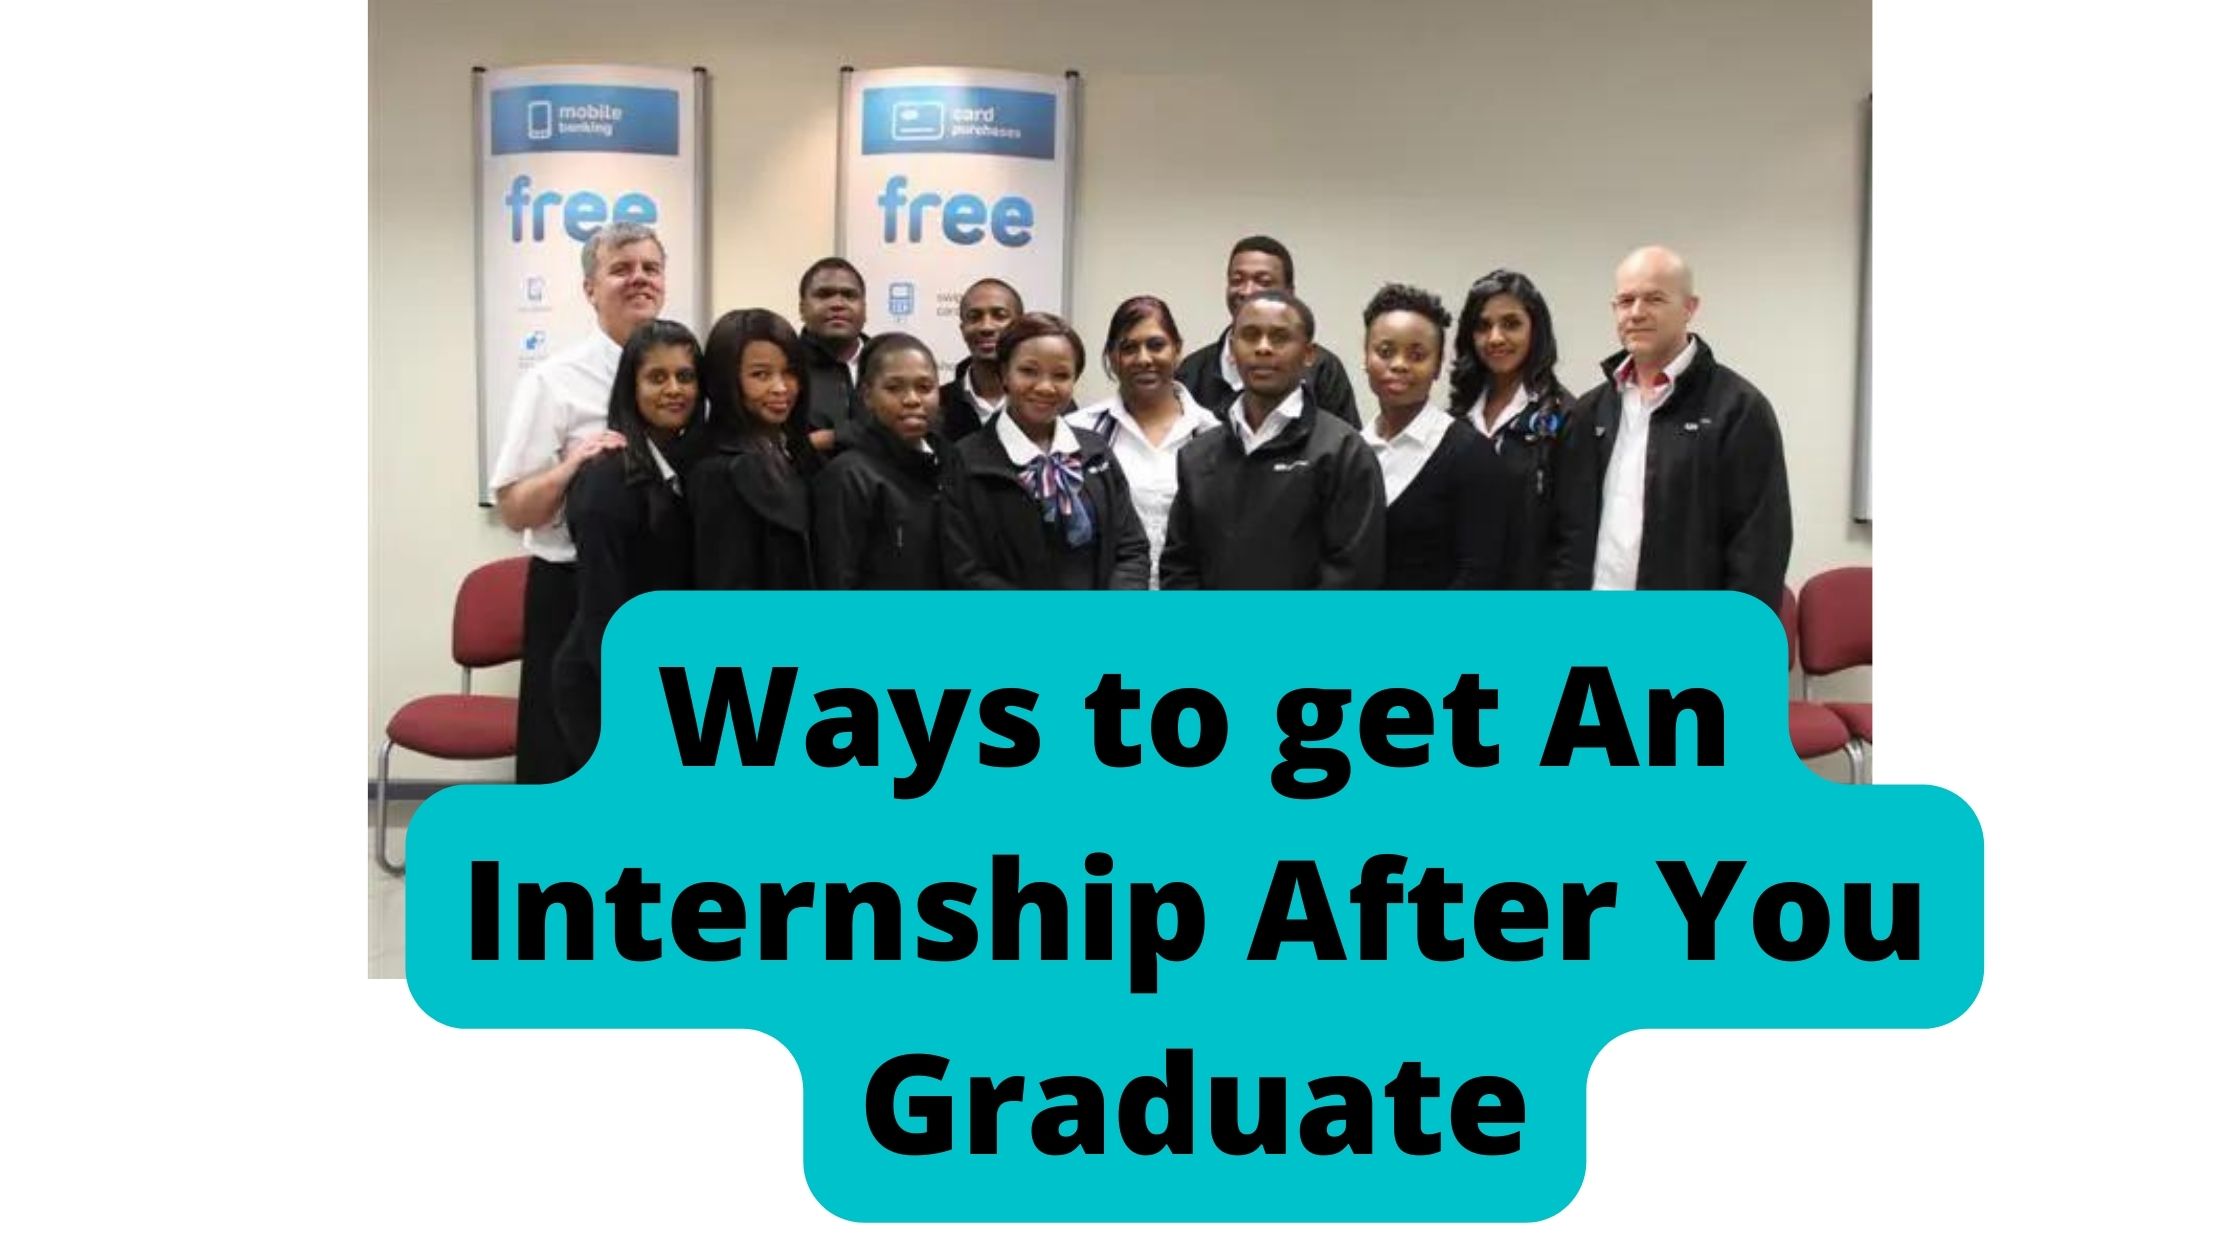 Ways to get An Internship After You Graduate